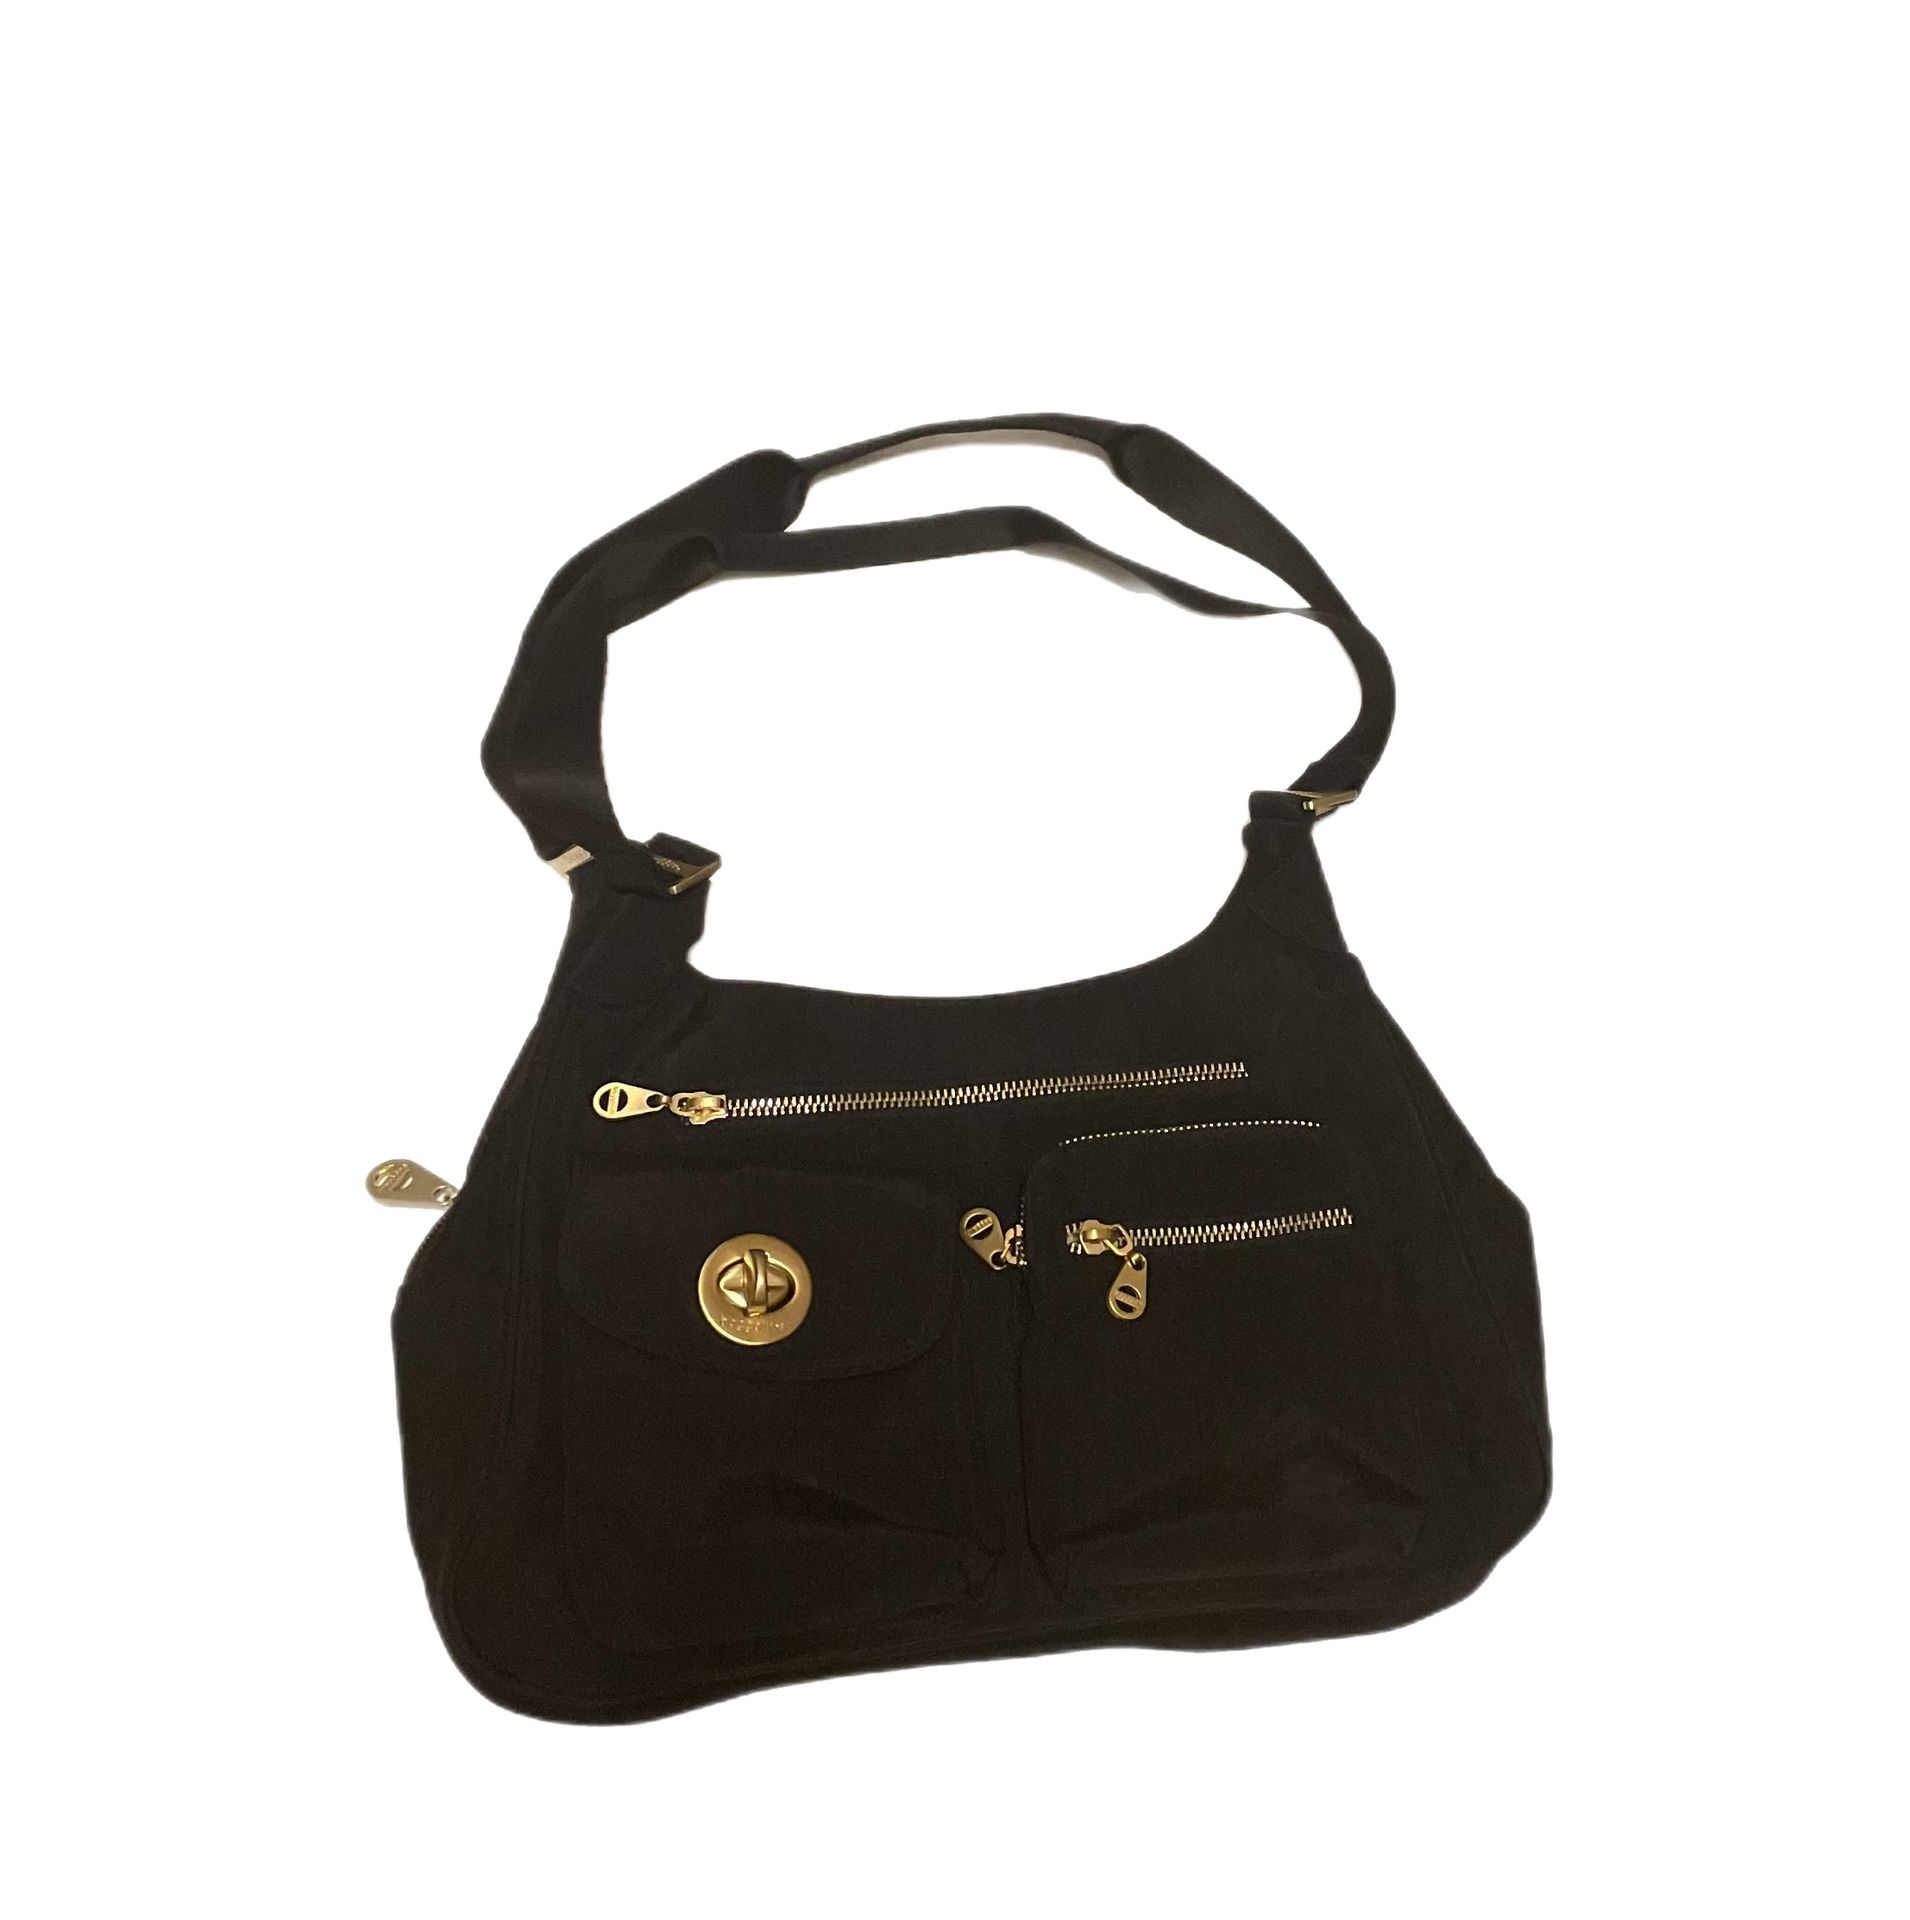 Baggallini black purse